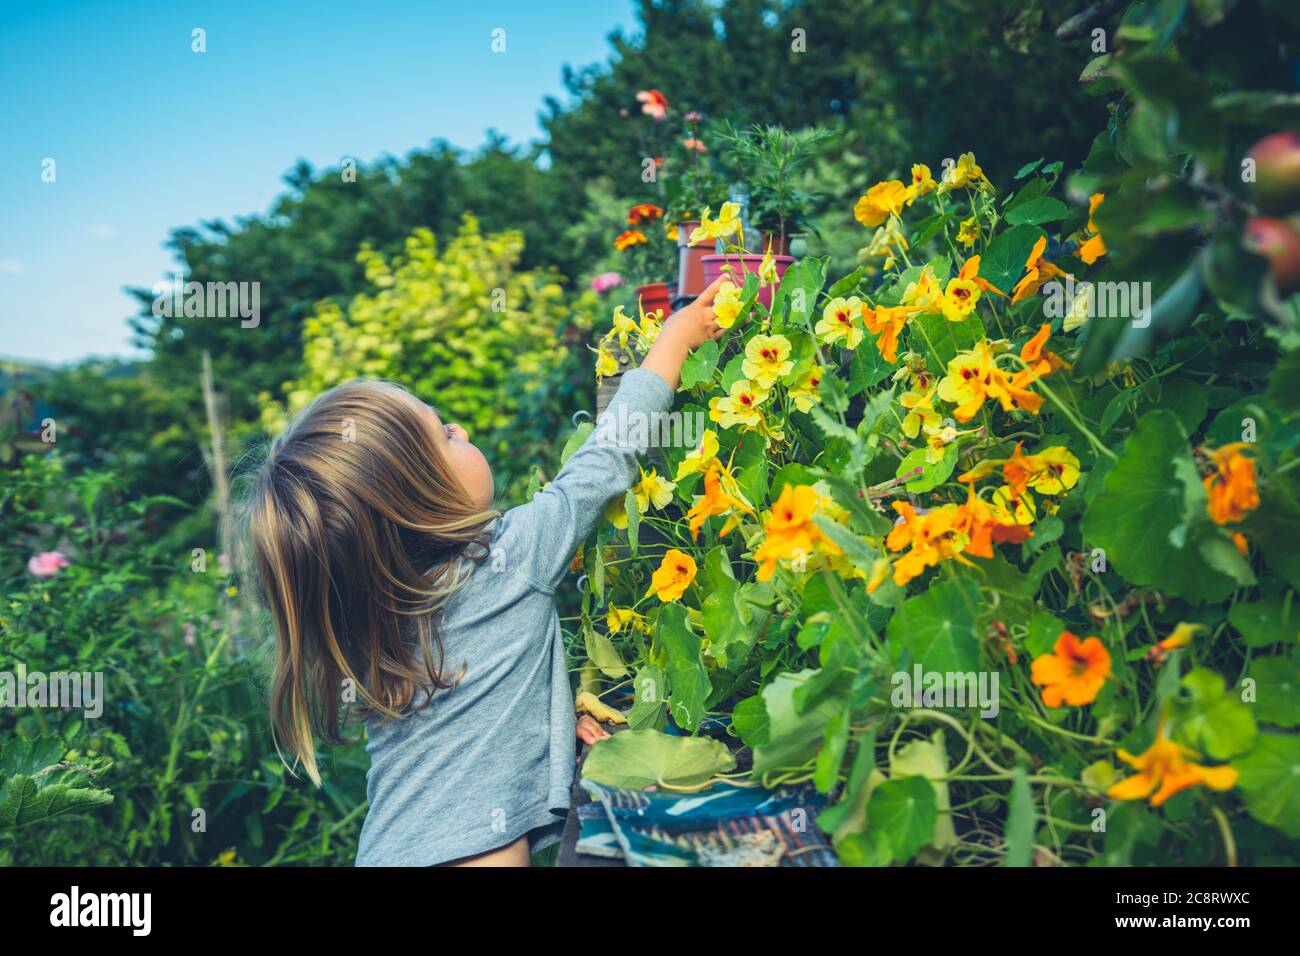 Un petit préchooler est de cueillir et de manger des fleurs comestibles dans le jardin Banque D'Images